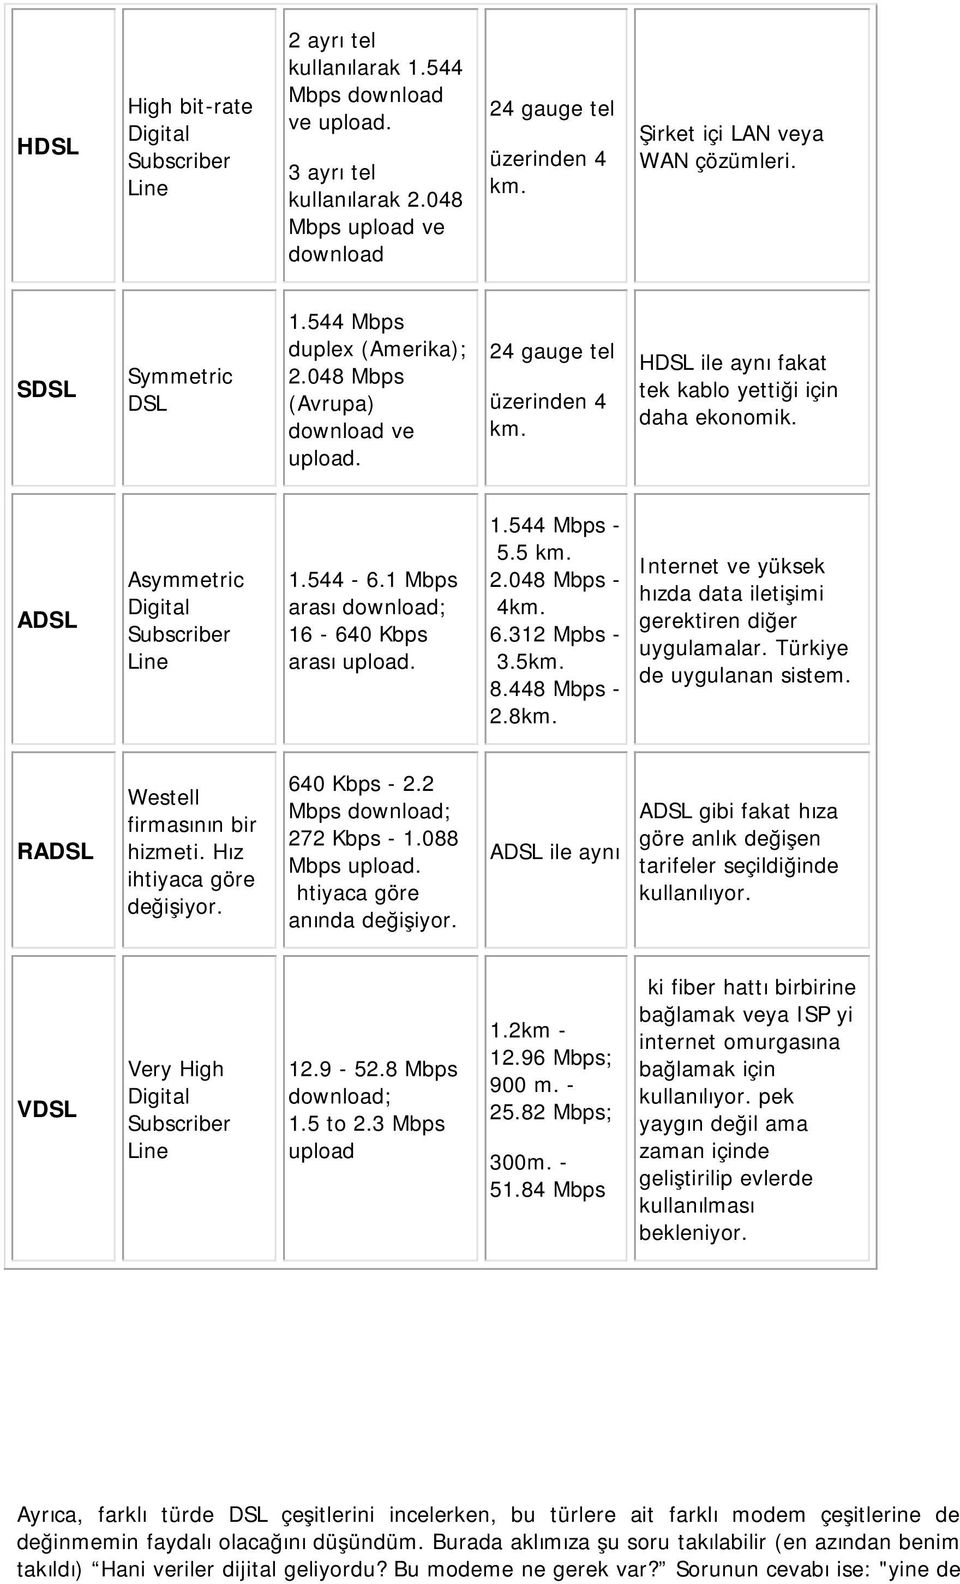 ADSL Asymmetric Digital Subscriber Line 1.544-6.1 Mbps arası download; 16-640 Kbps arası upload. 1.544 Mbps - 5.5 km. 2.048 Mbps - 4km. 6.312 Mpbs - 3.5km. 8.448 Mbps - 2.8km.